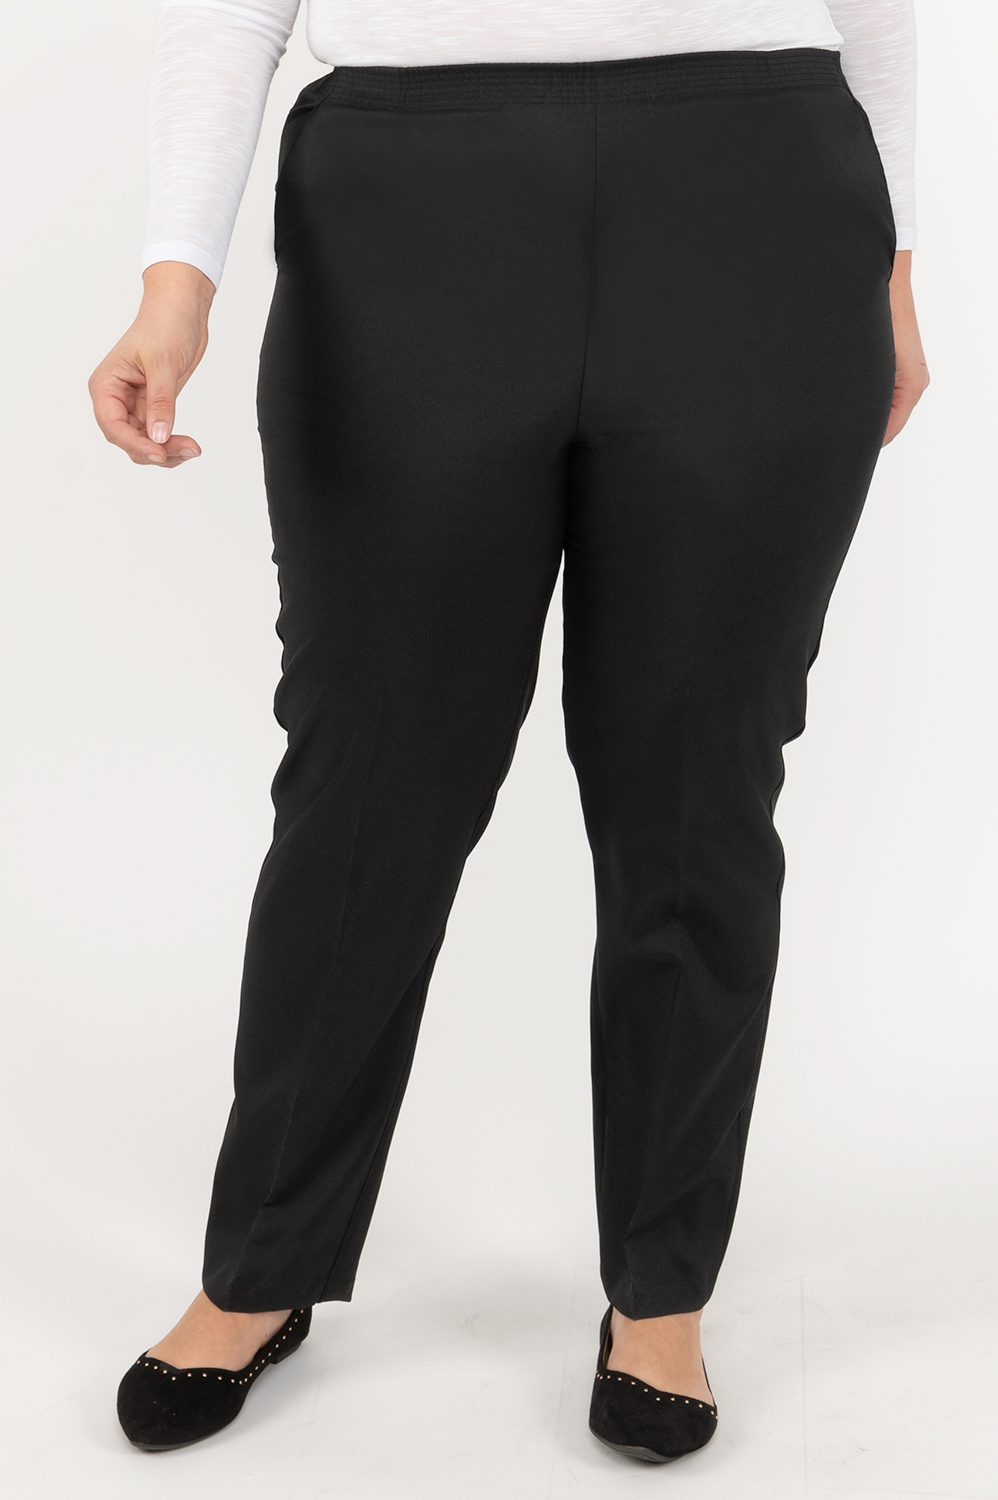 Virtuelle Womens Size 16 / Plus Pants Size Black (s)